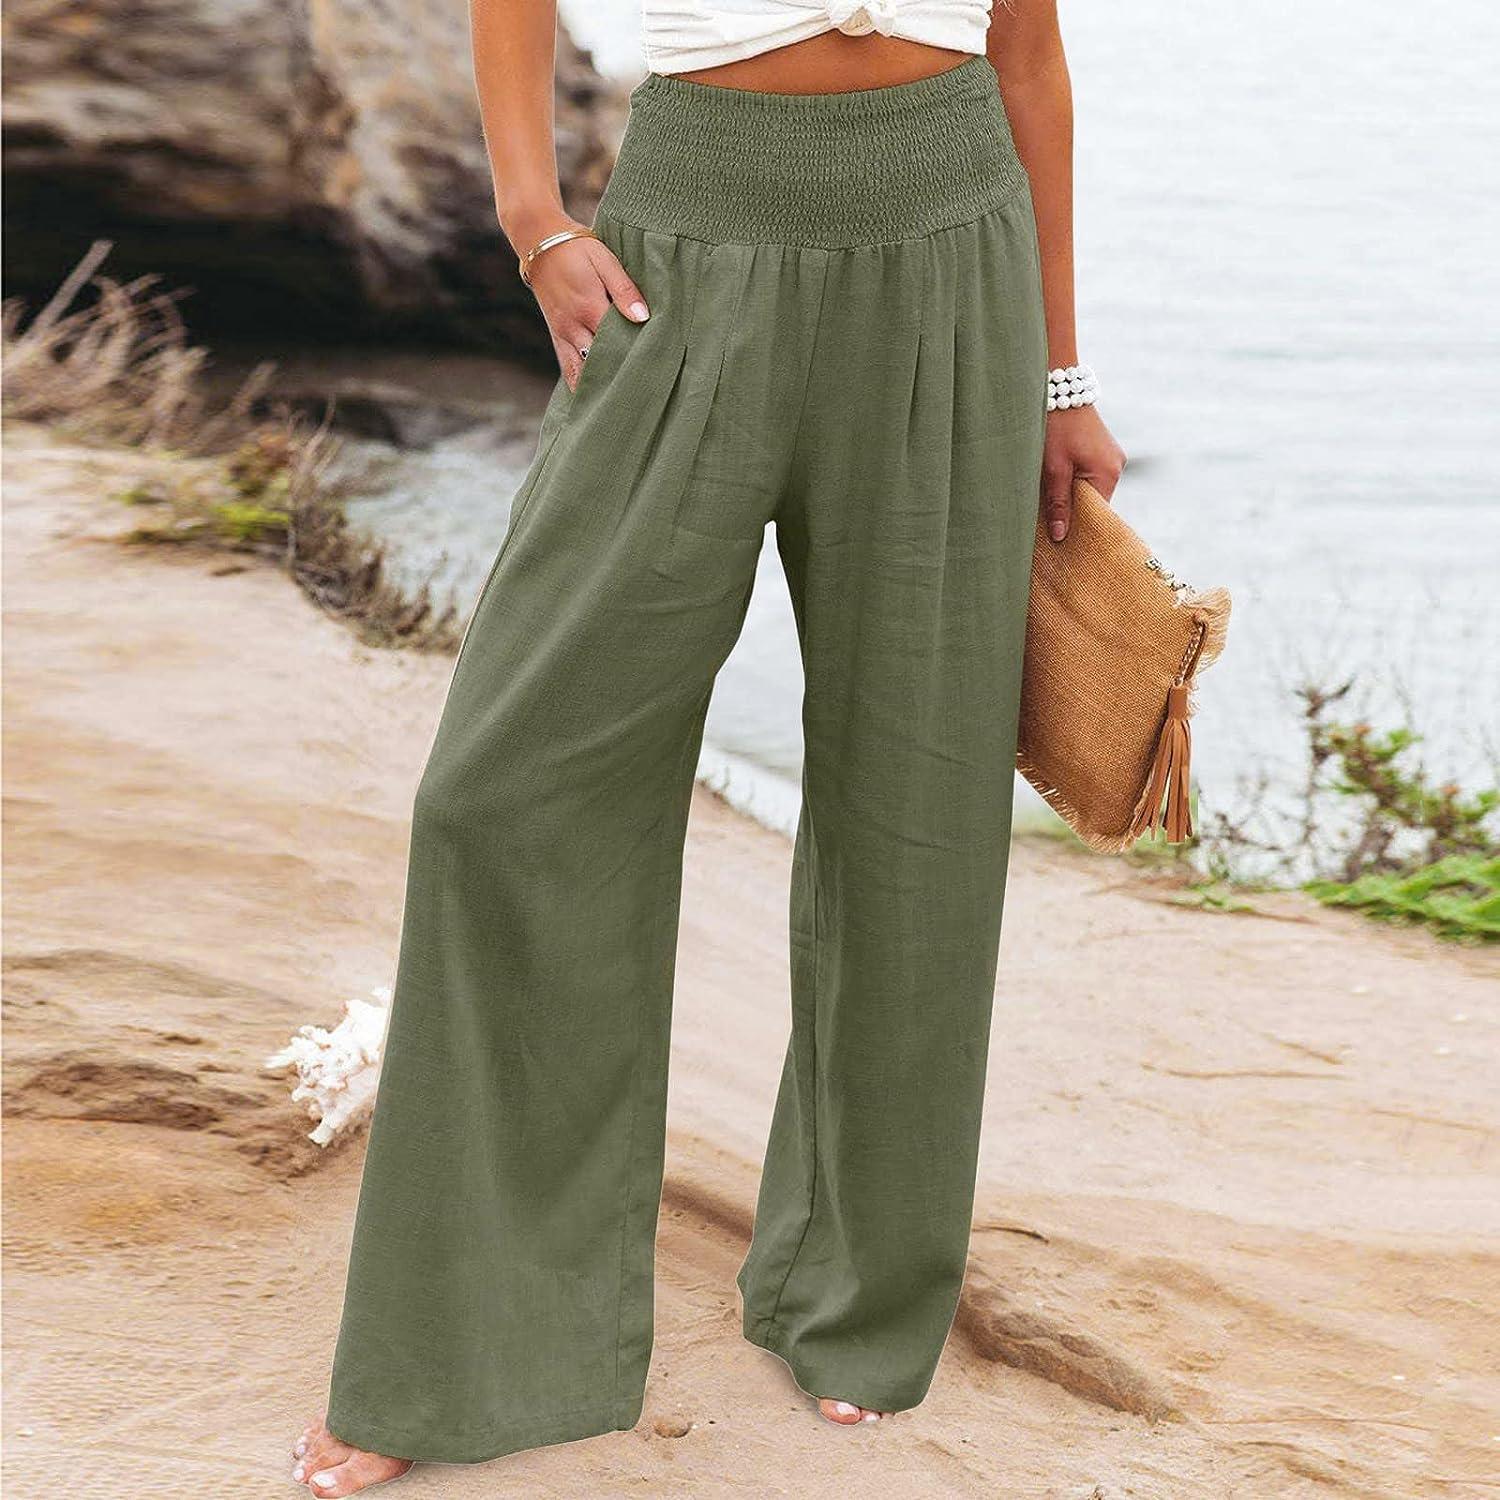 Women's Casual Summer Capri Pants Cotton Linen Elastic Waist Trousers Solid  Plus Size Relex Fit Beach Cropped Pants